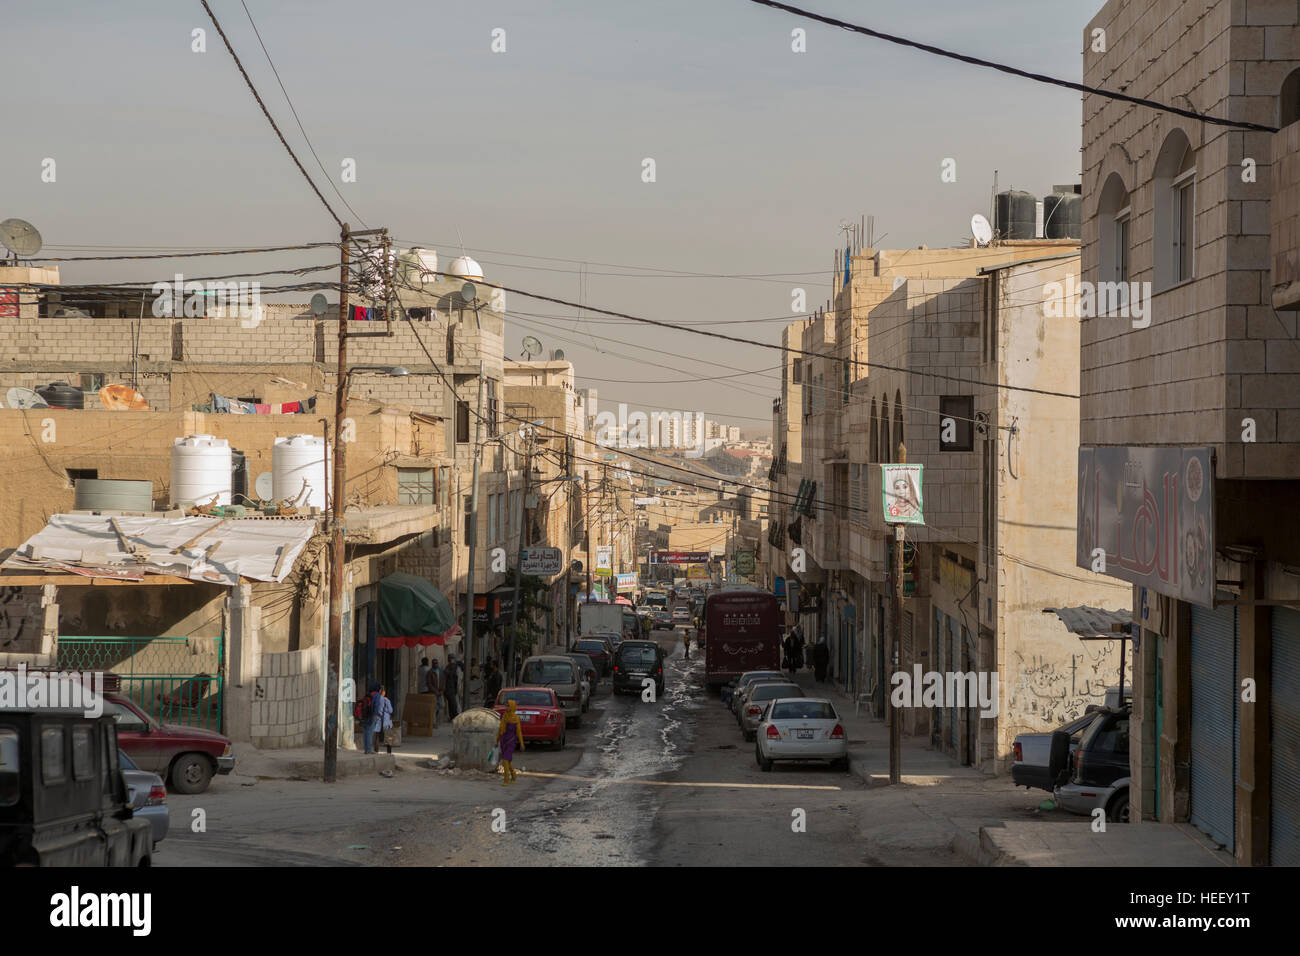 City scene in sprawling Zarqa, Jordan. Stock Photo